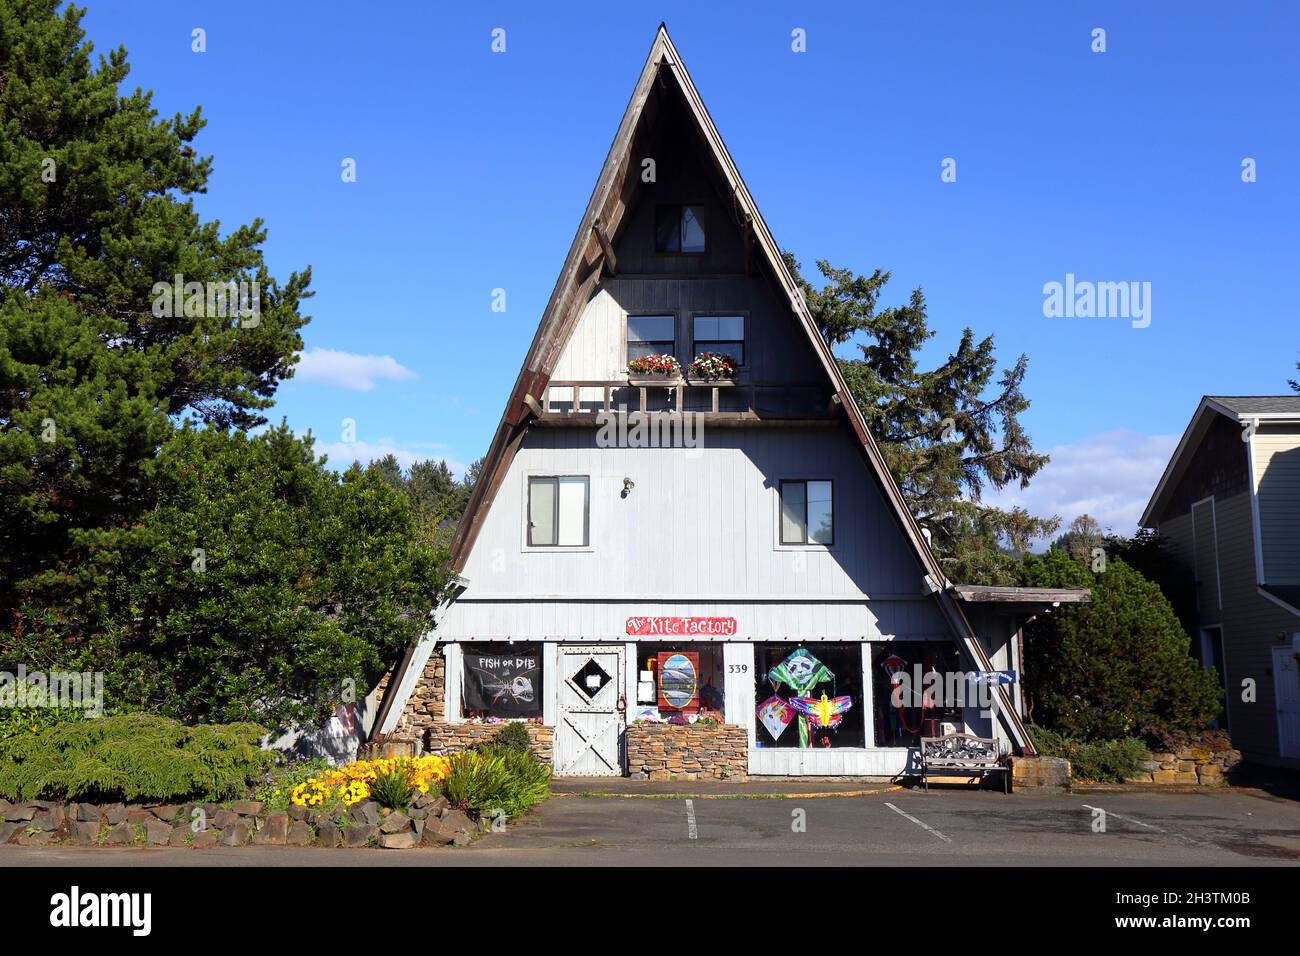 Pinky's Kite Factory, 339 Fir St, Cannon Beach, Oregon. Escaparate exterior de una tienda de cometas en una casa De A-Frame en forma de triángulo isósceles. Foto de stock